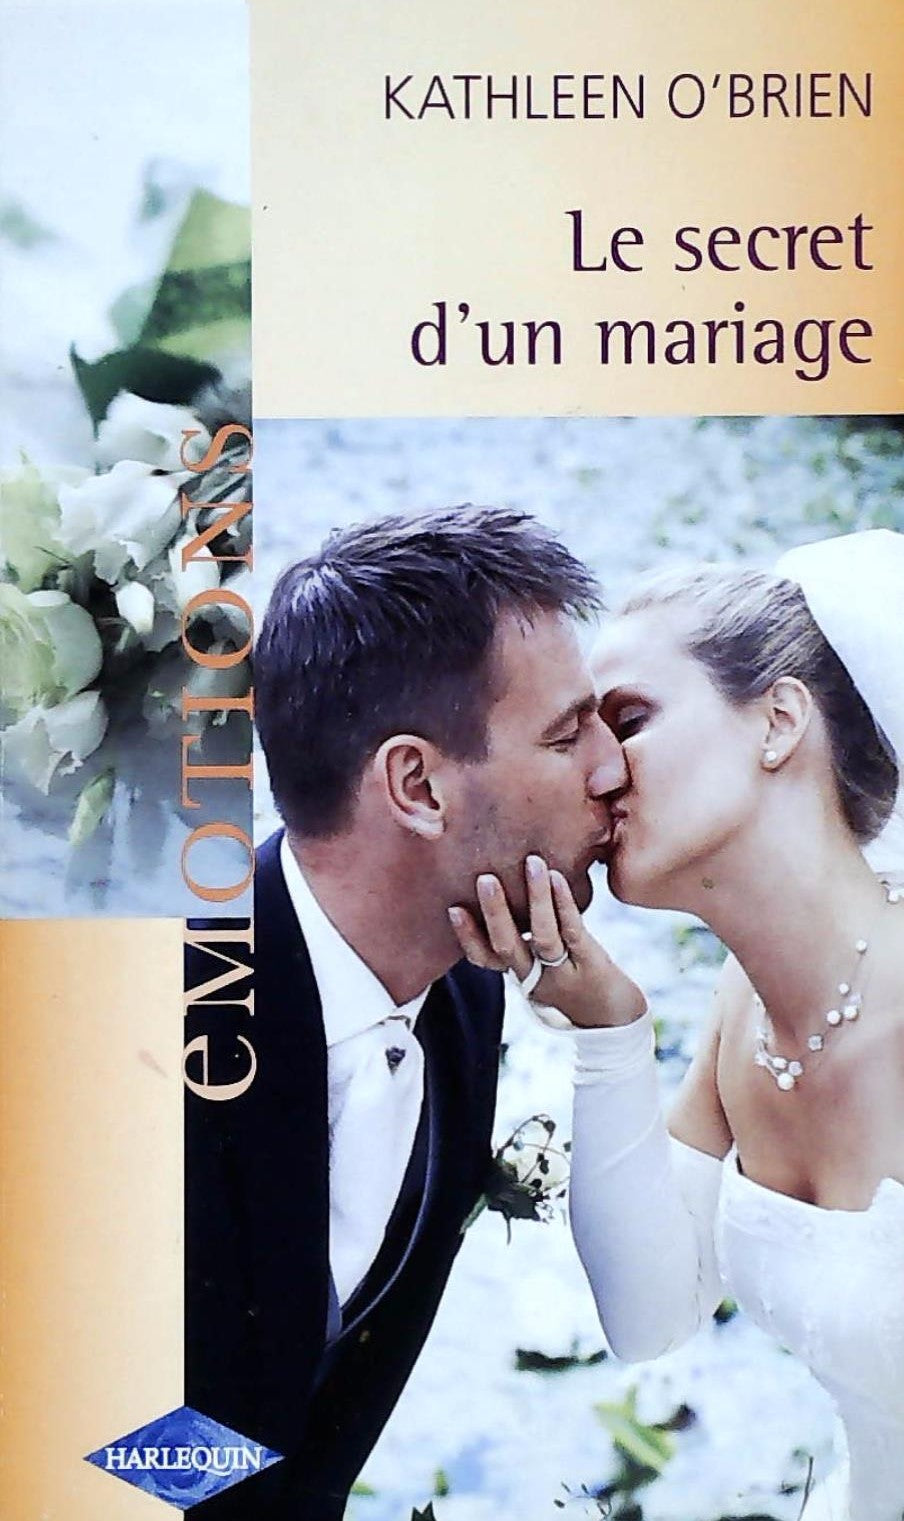 Livre ISBN 0373421605 Émotions (Harlequin) # 659 : Le secret d'un mariage (Kathleen O'Brien)